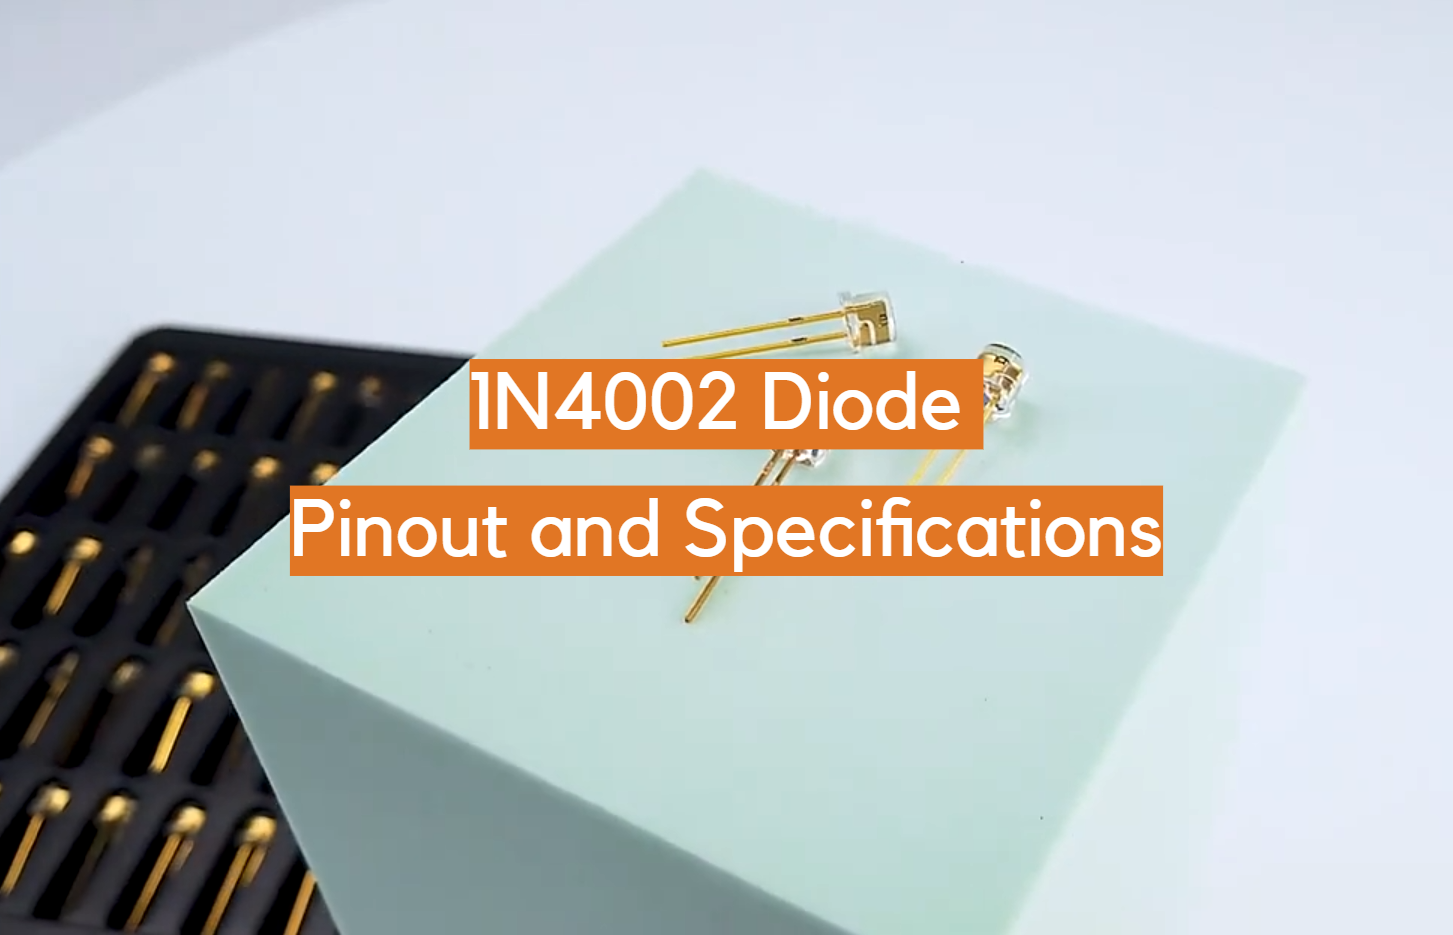 Pinout y especificaciones del diodo 1N4002